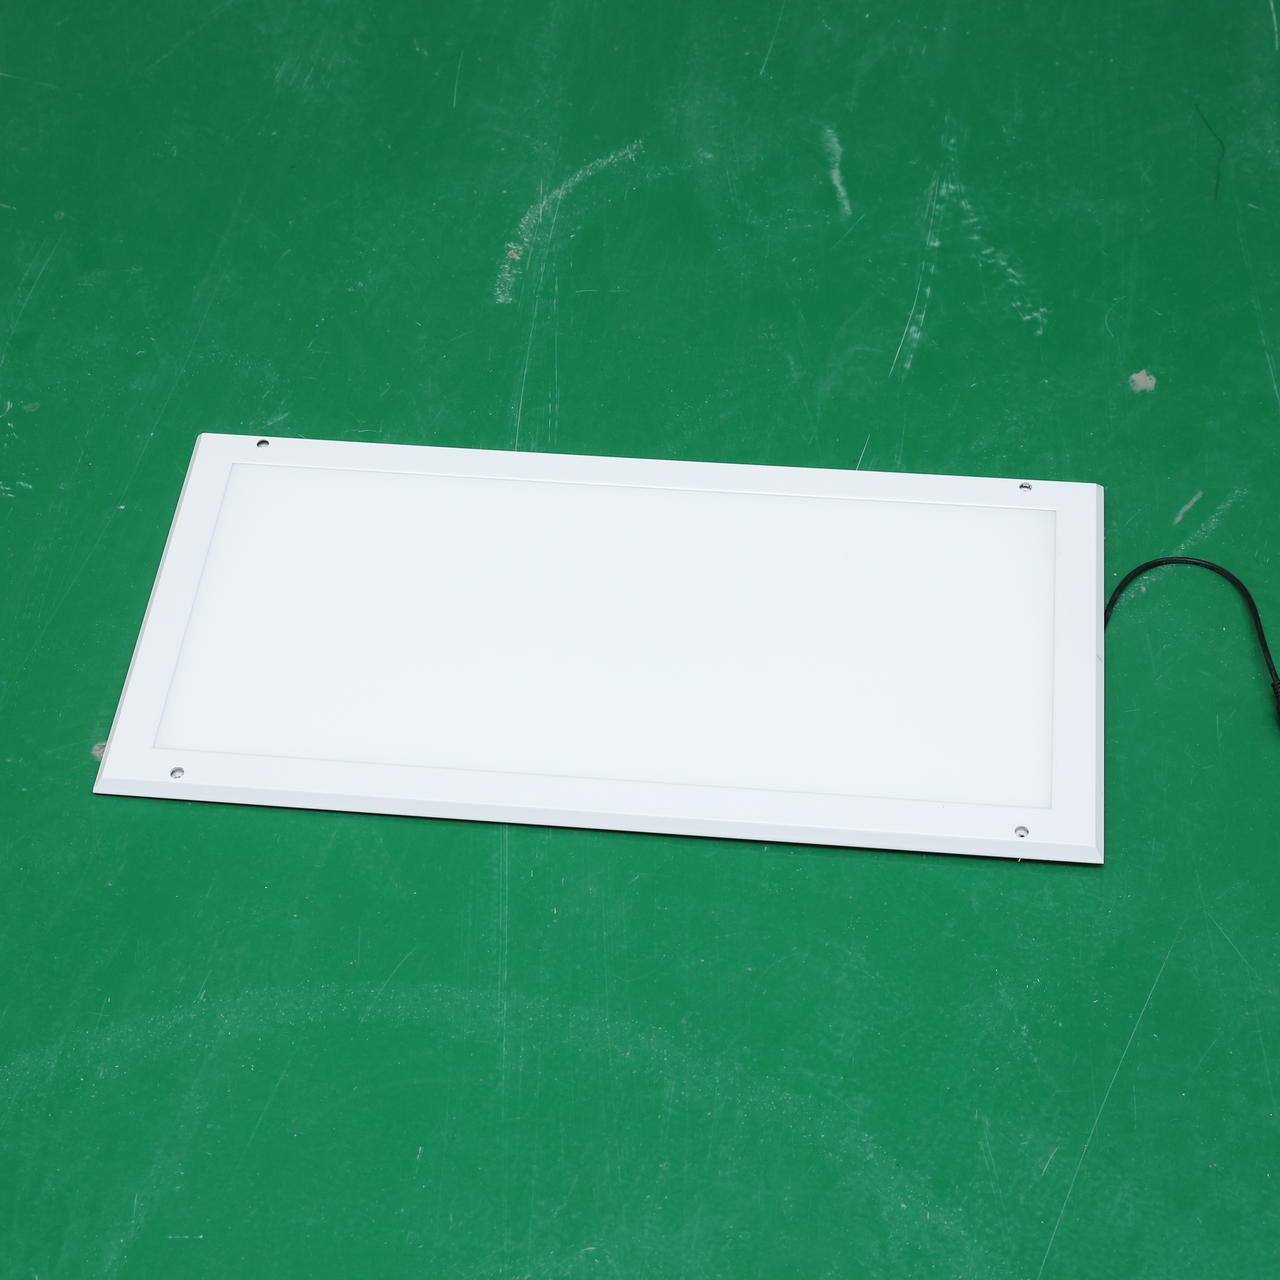 亚宝净化  灯管式LED净化灯 超薄LED平板灯 双管净化LED荧光灯定制图片